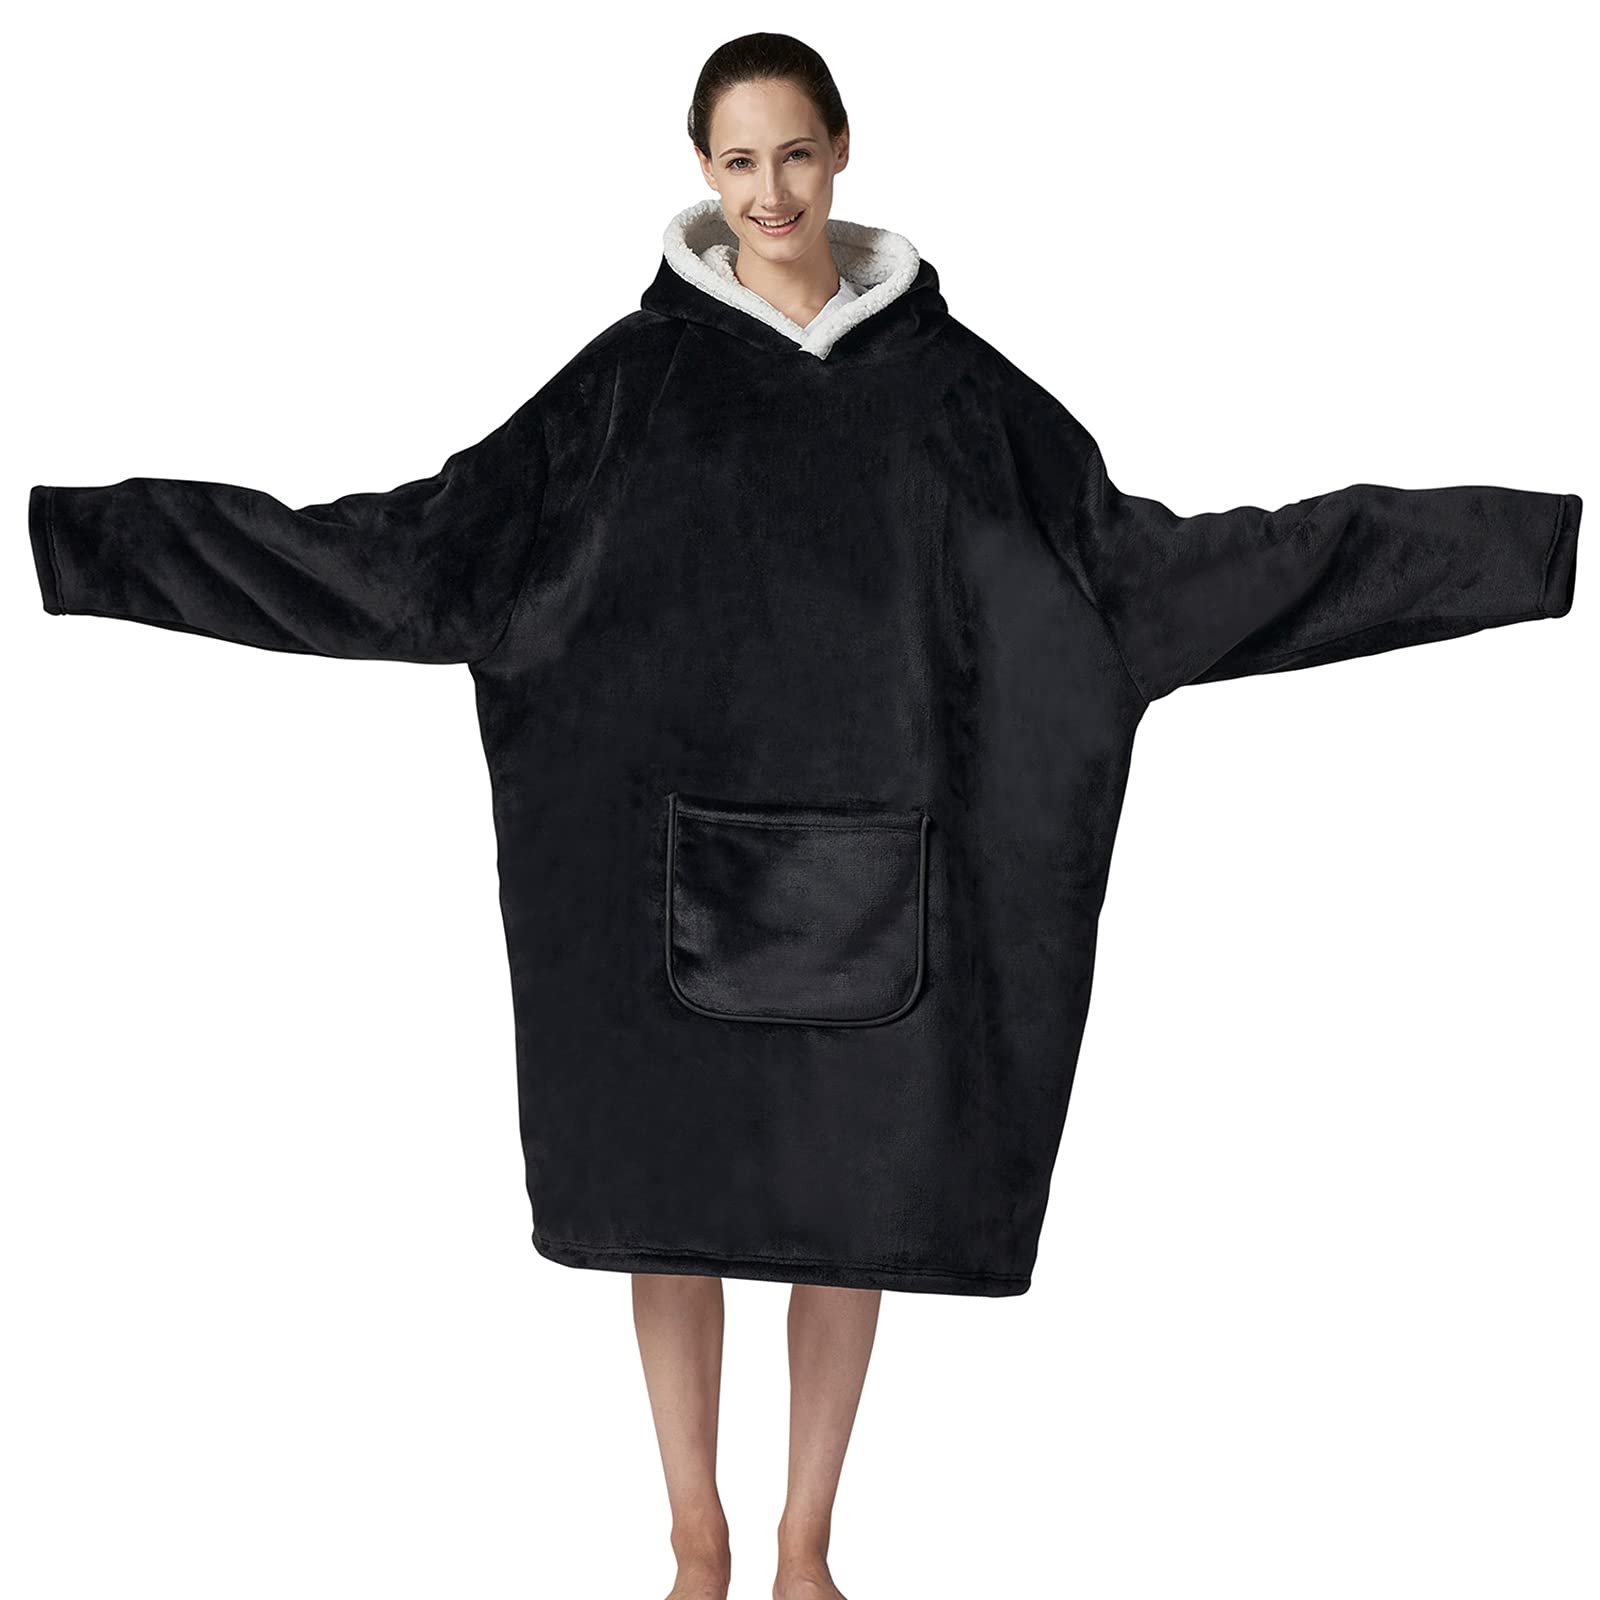 Blanket Hoodie Coat for Women and Men